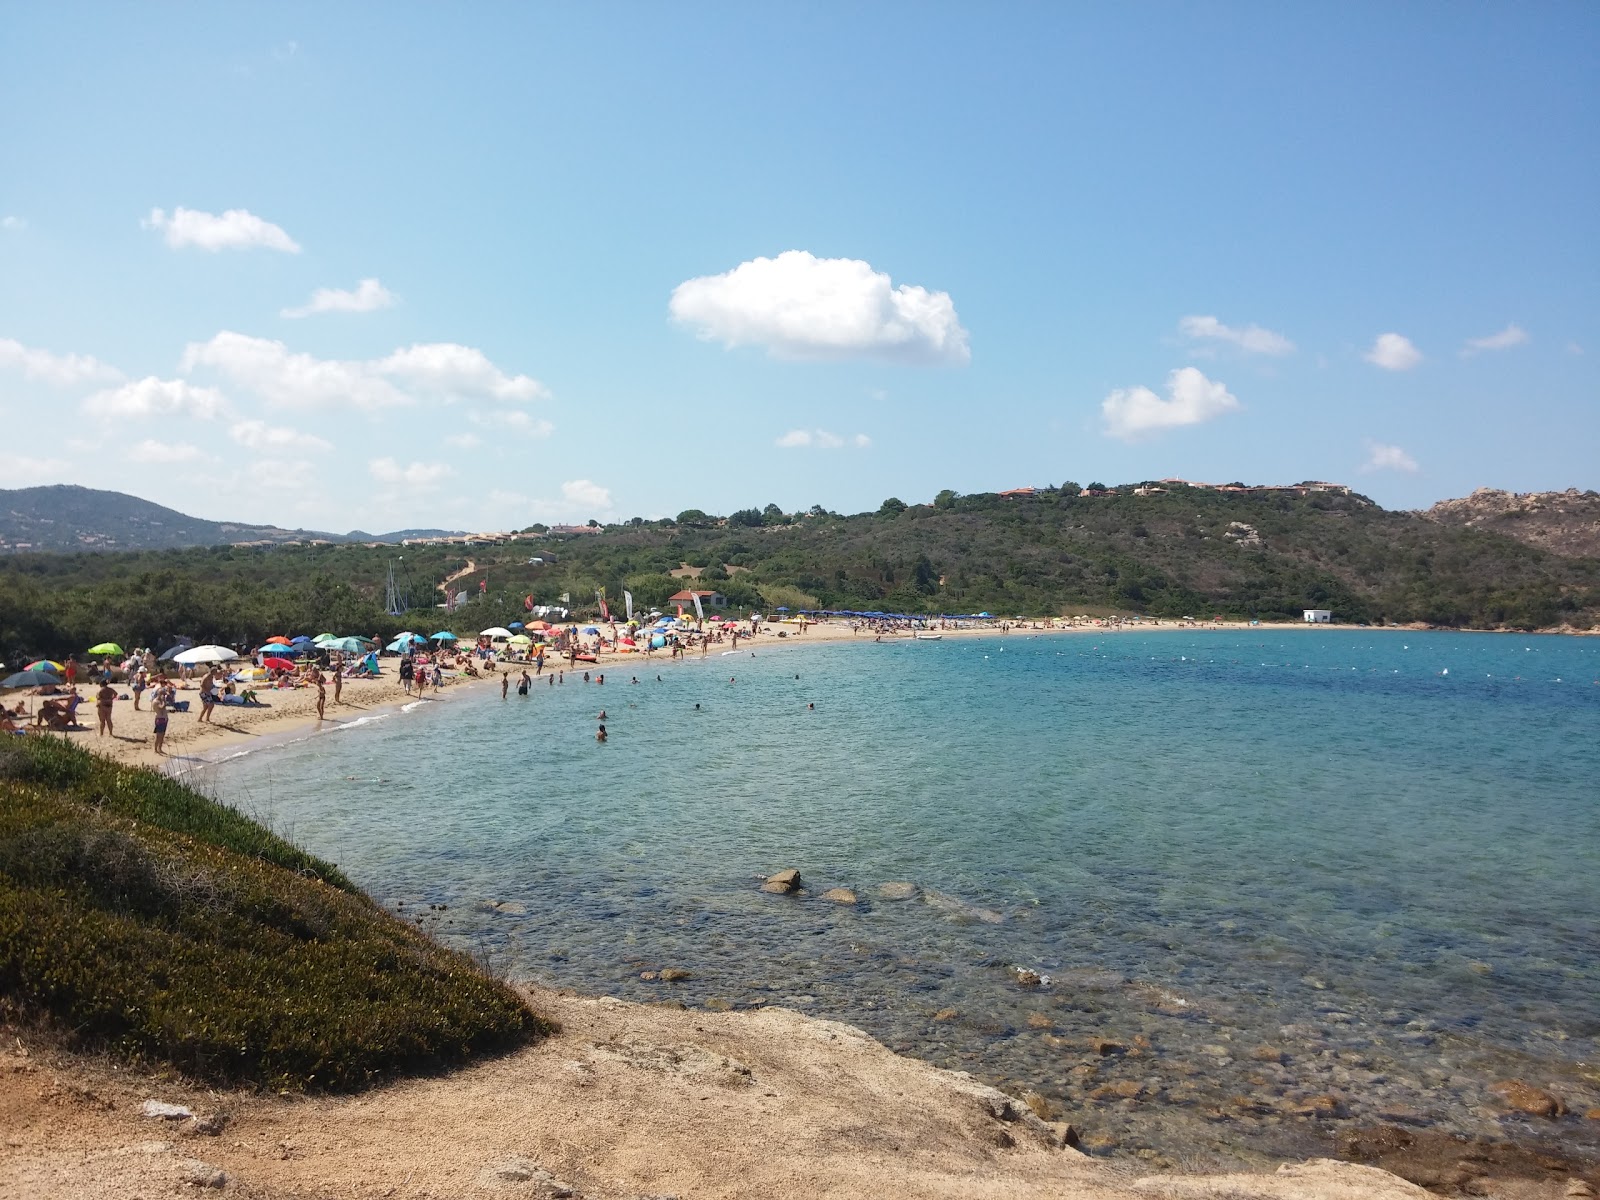 Photo of Spiaggia de La Sciumara with bright sand surface